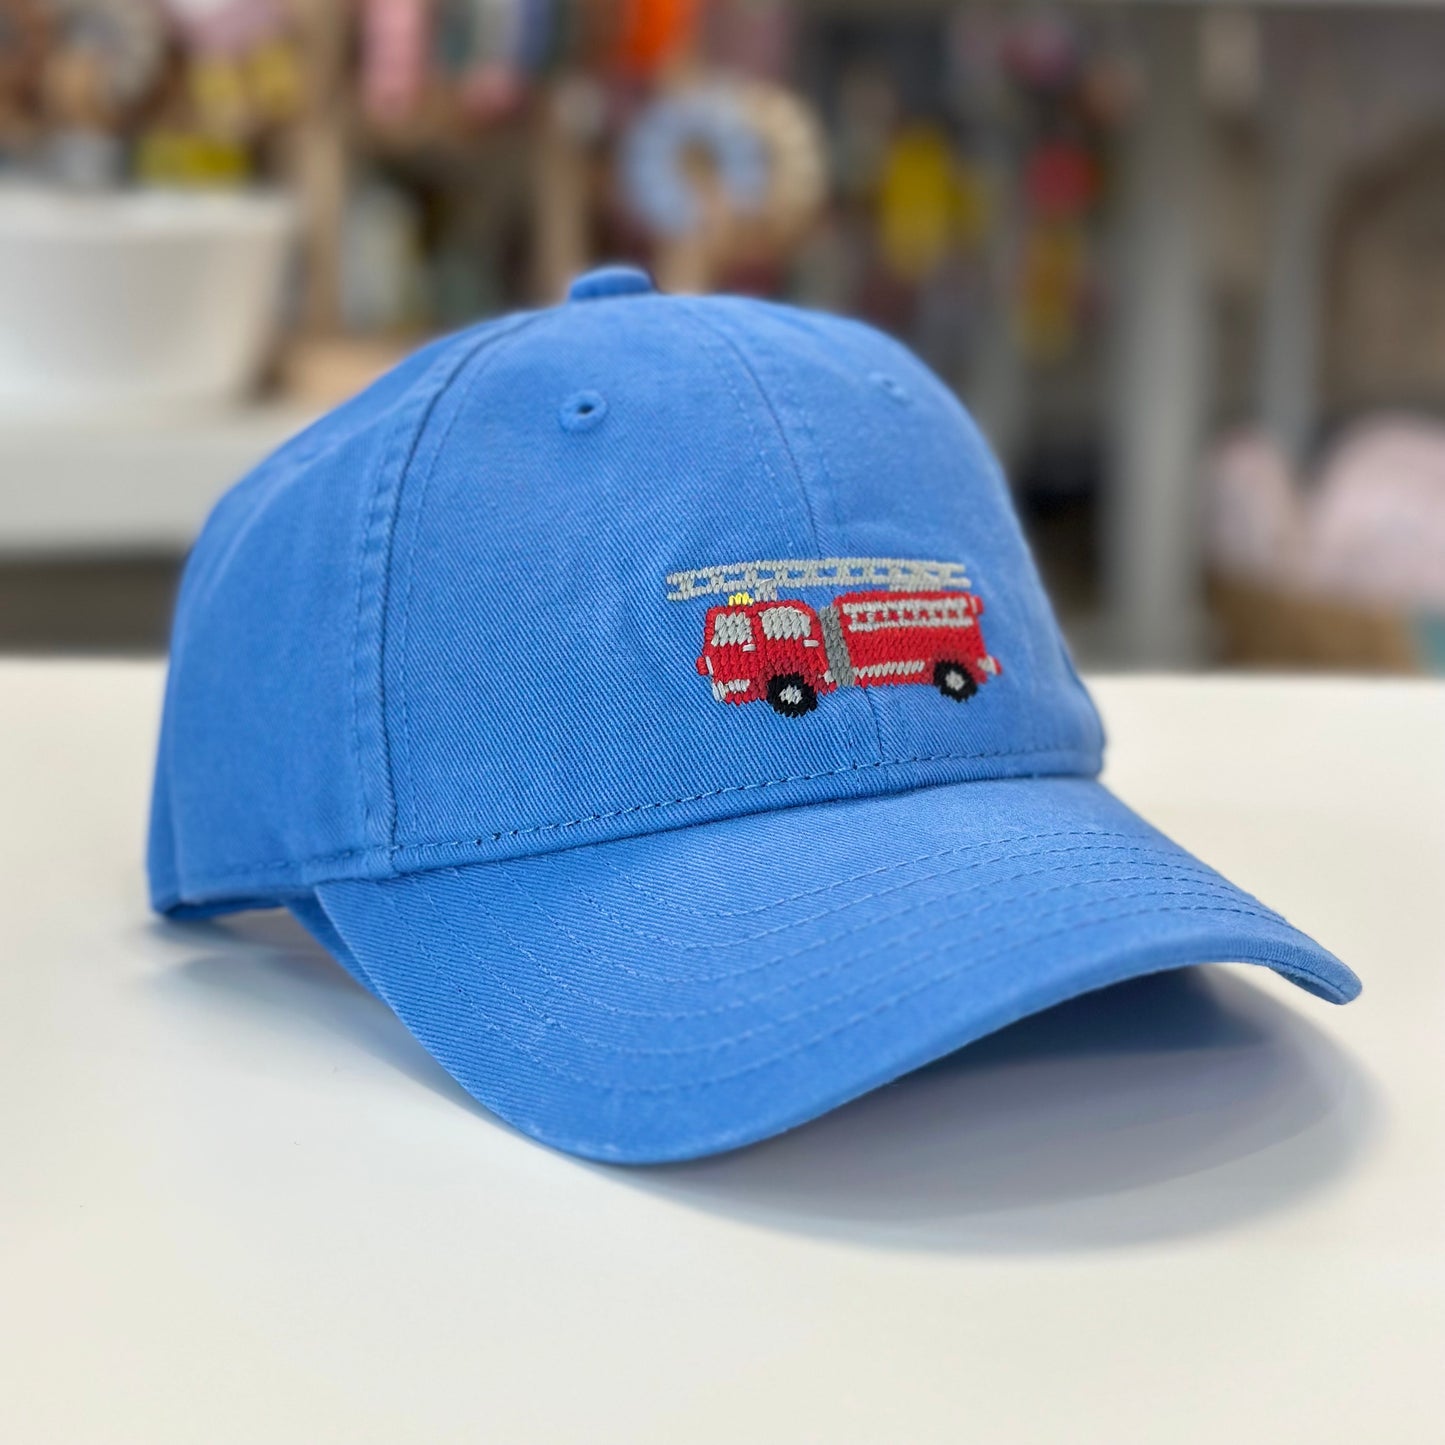 Firetruck Needlepoint Baseball Cap, Light Blue